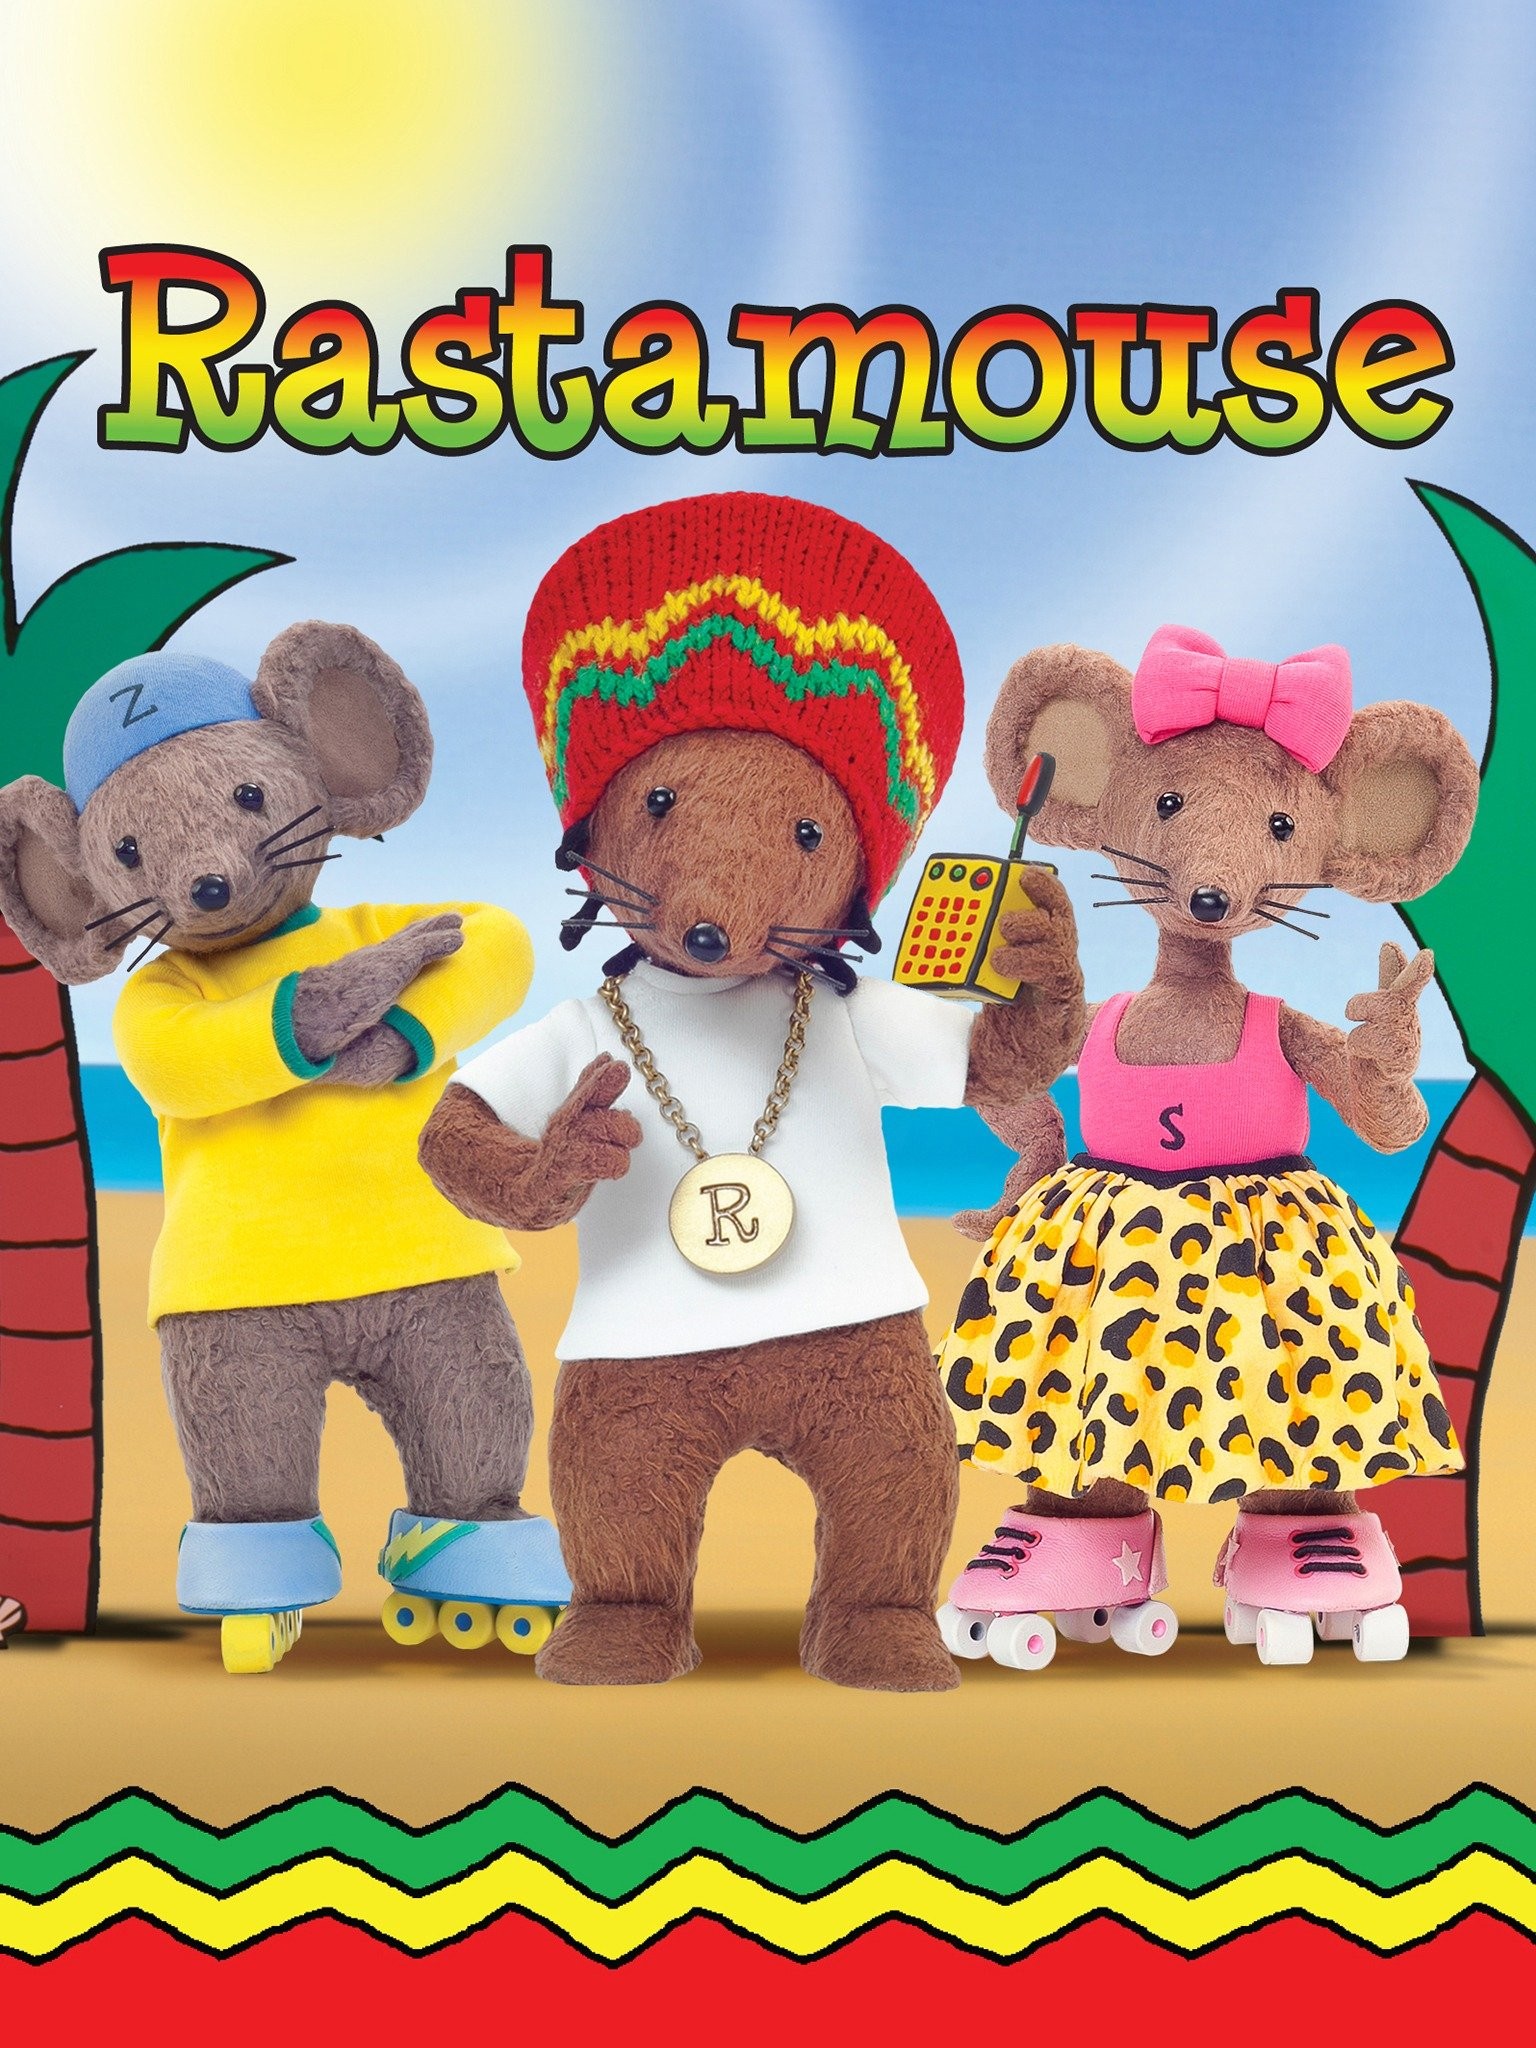 Rastamouse books for children - Marathon Mystery - paperback 9781447218586  | eBay